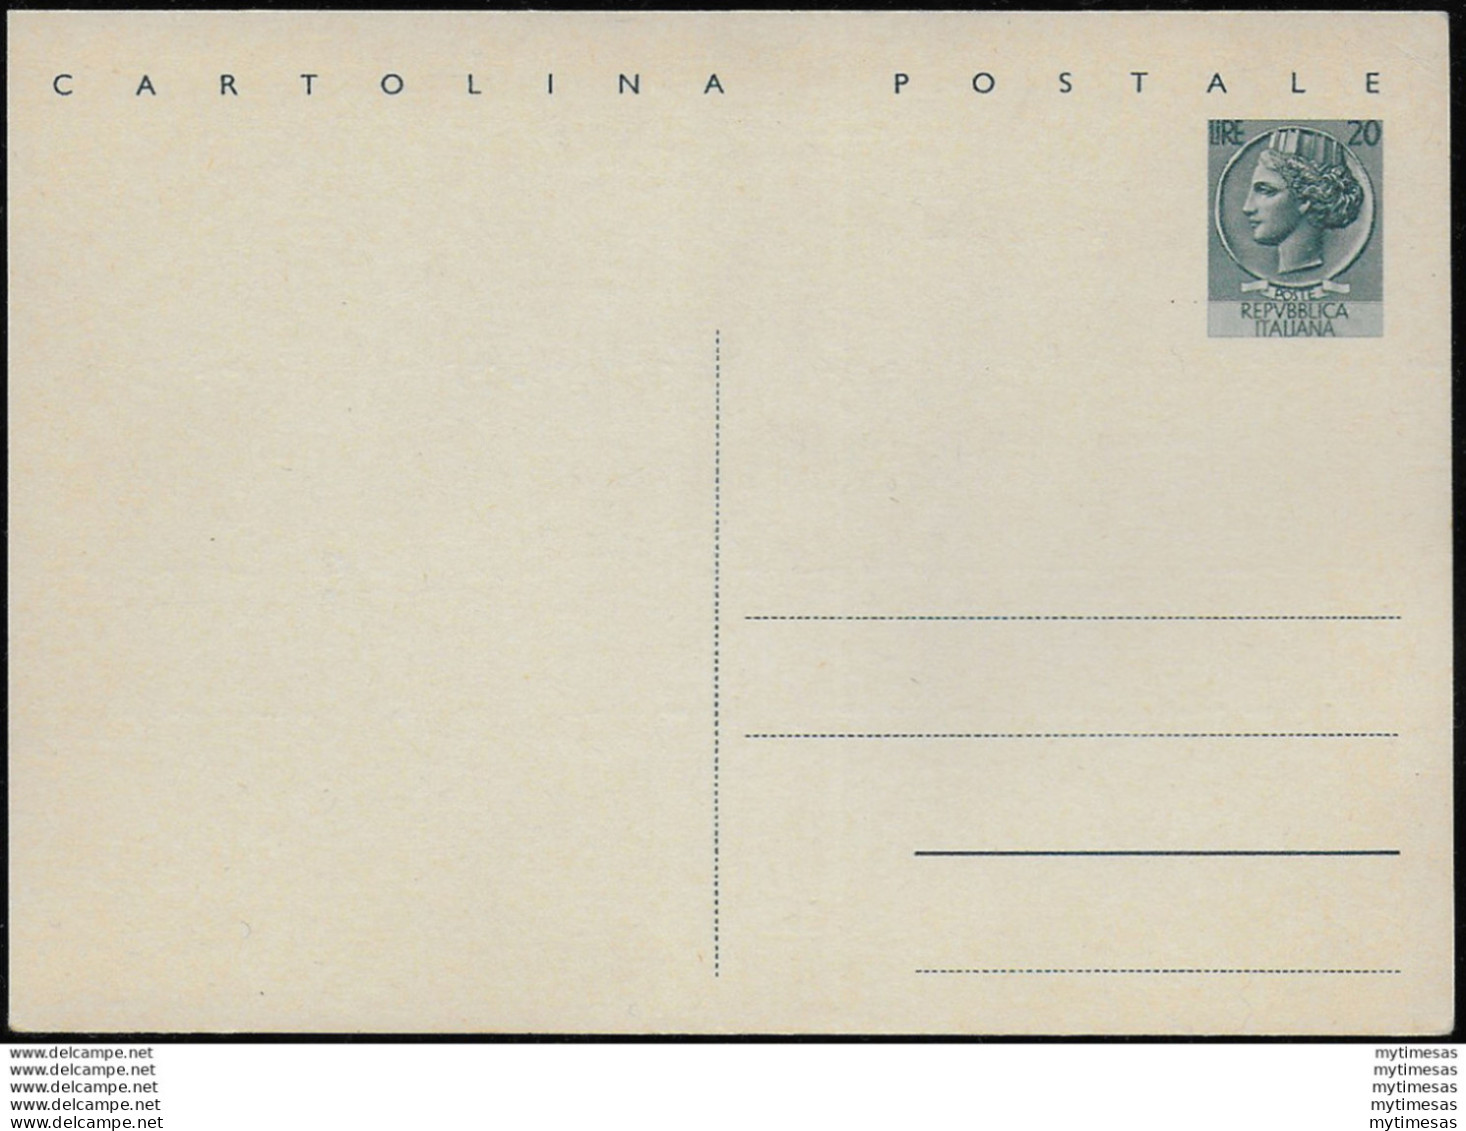 1954 Italia C154 Lire 20 Cartolina Postale Fil. - Interi Postali